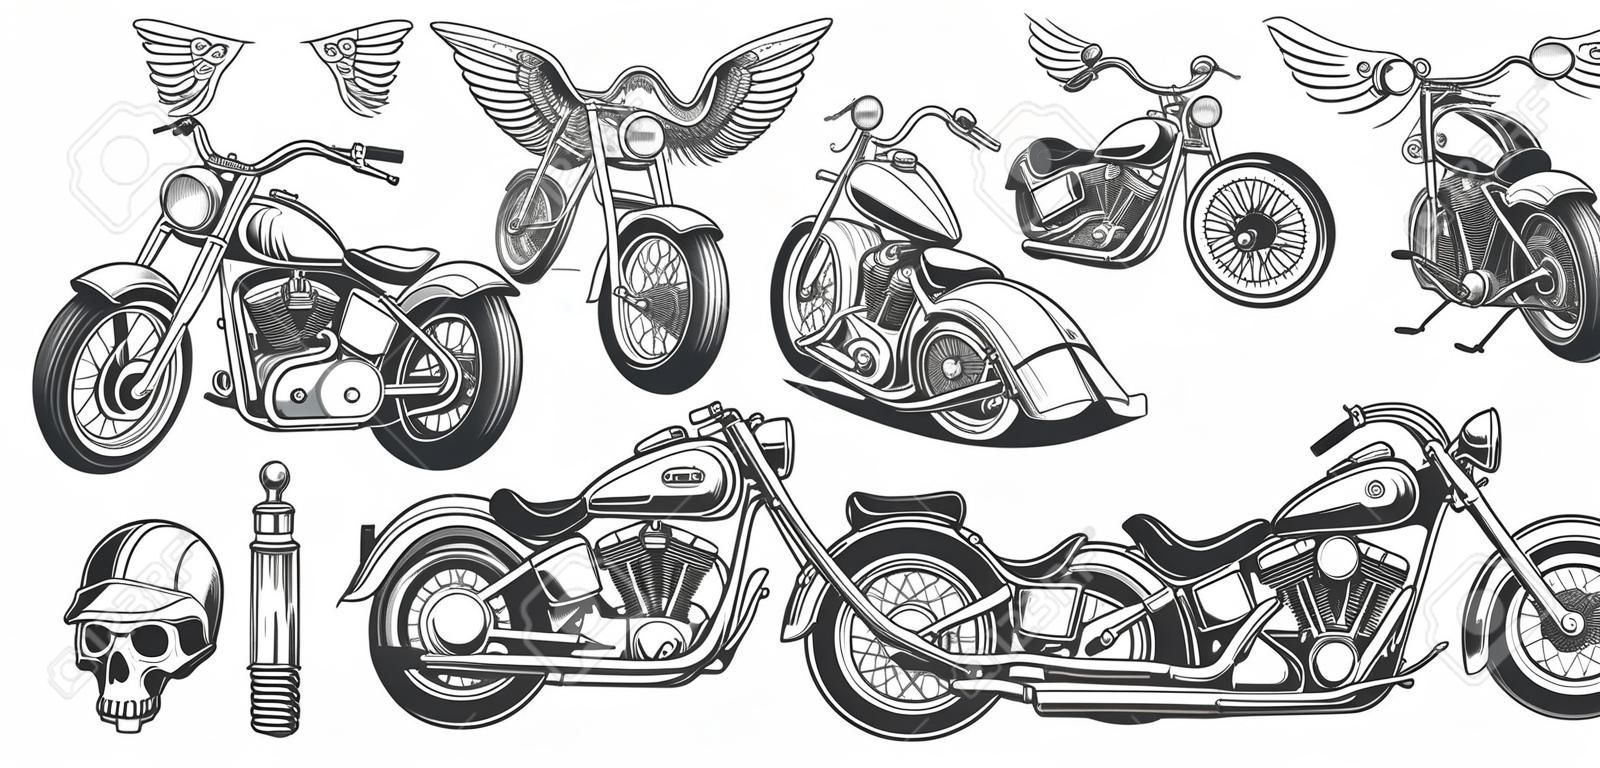 Set von Illustrationen, Icons von handgezeichneten Vintage Motorrad in verschiedenen Winkeln, Schädel, Flügel im Stil der Gravur. Klassischer Chopper im Tintenstil. Druck, Gravur, Vorlage, Design-Element